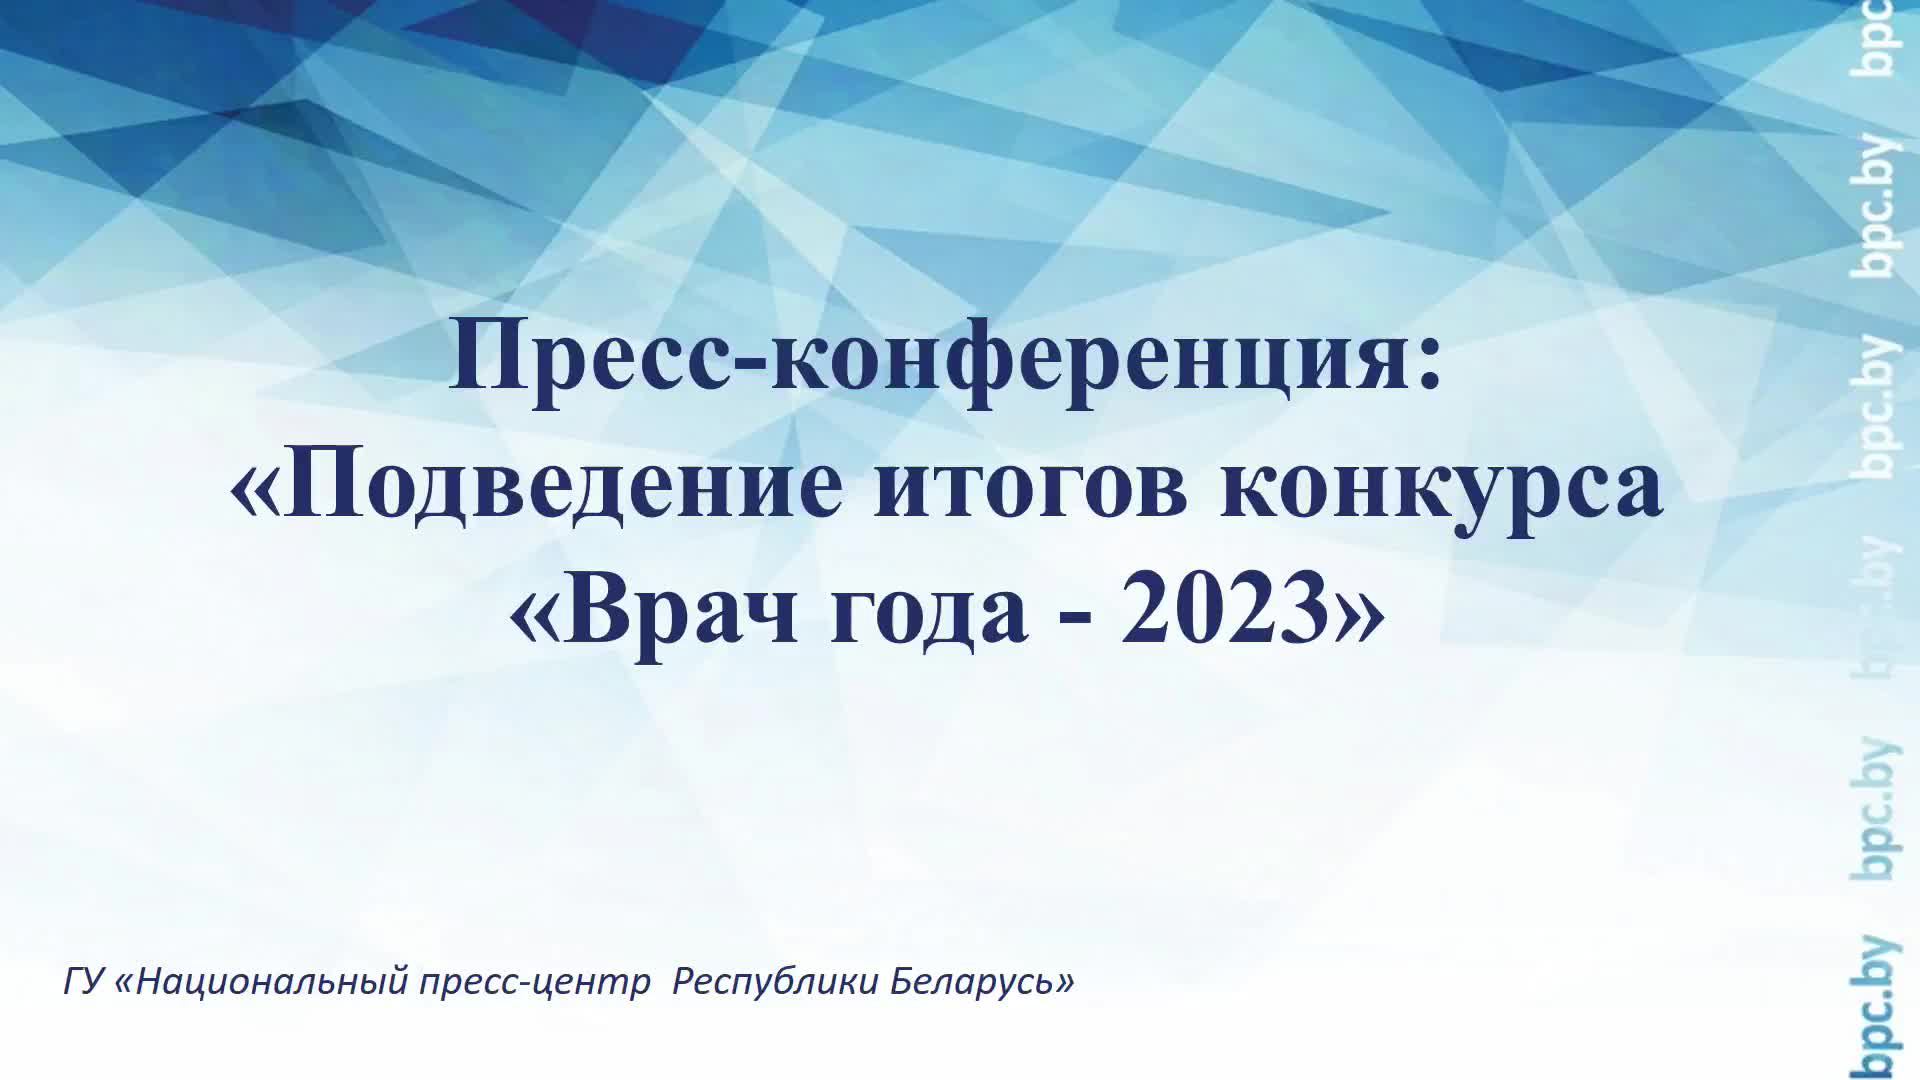 Пресс-конференция: «Подведение итогов конкурса «Врач года - 2023»